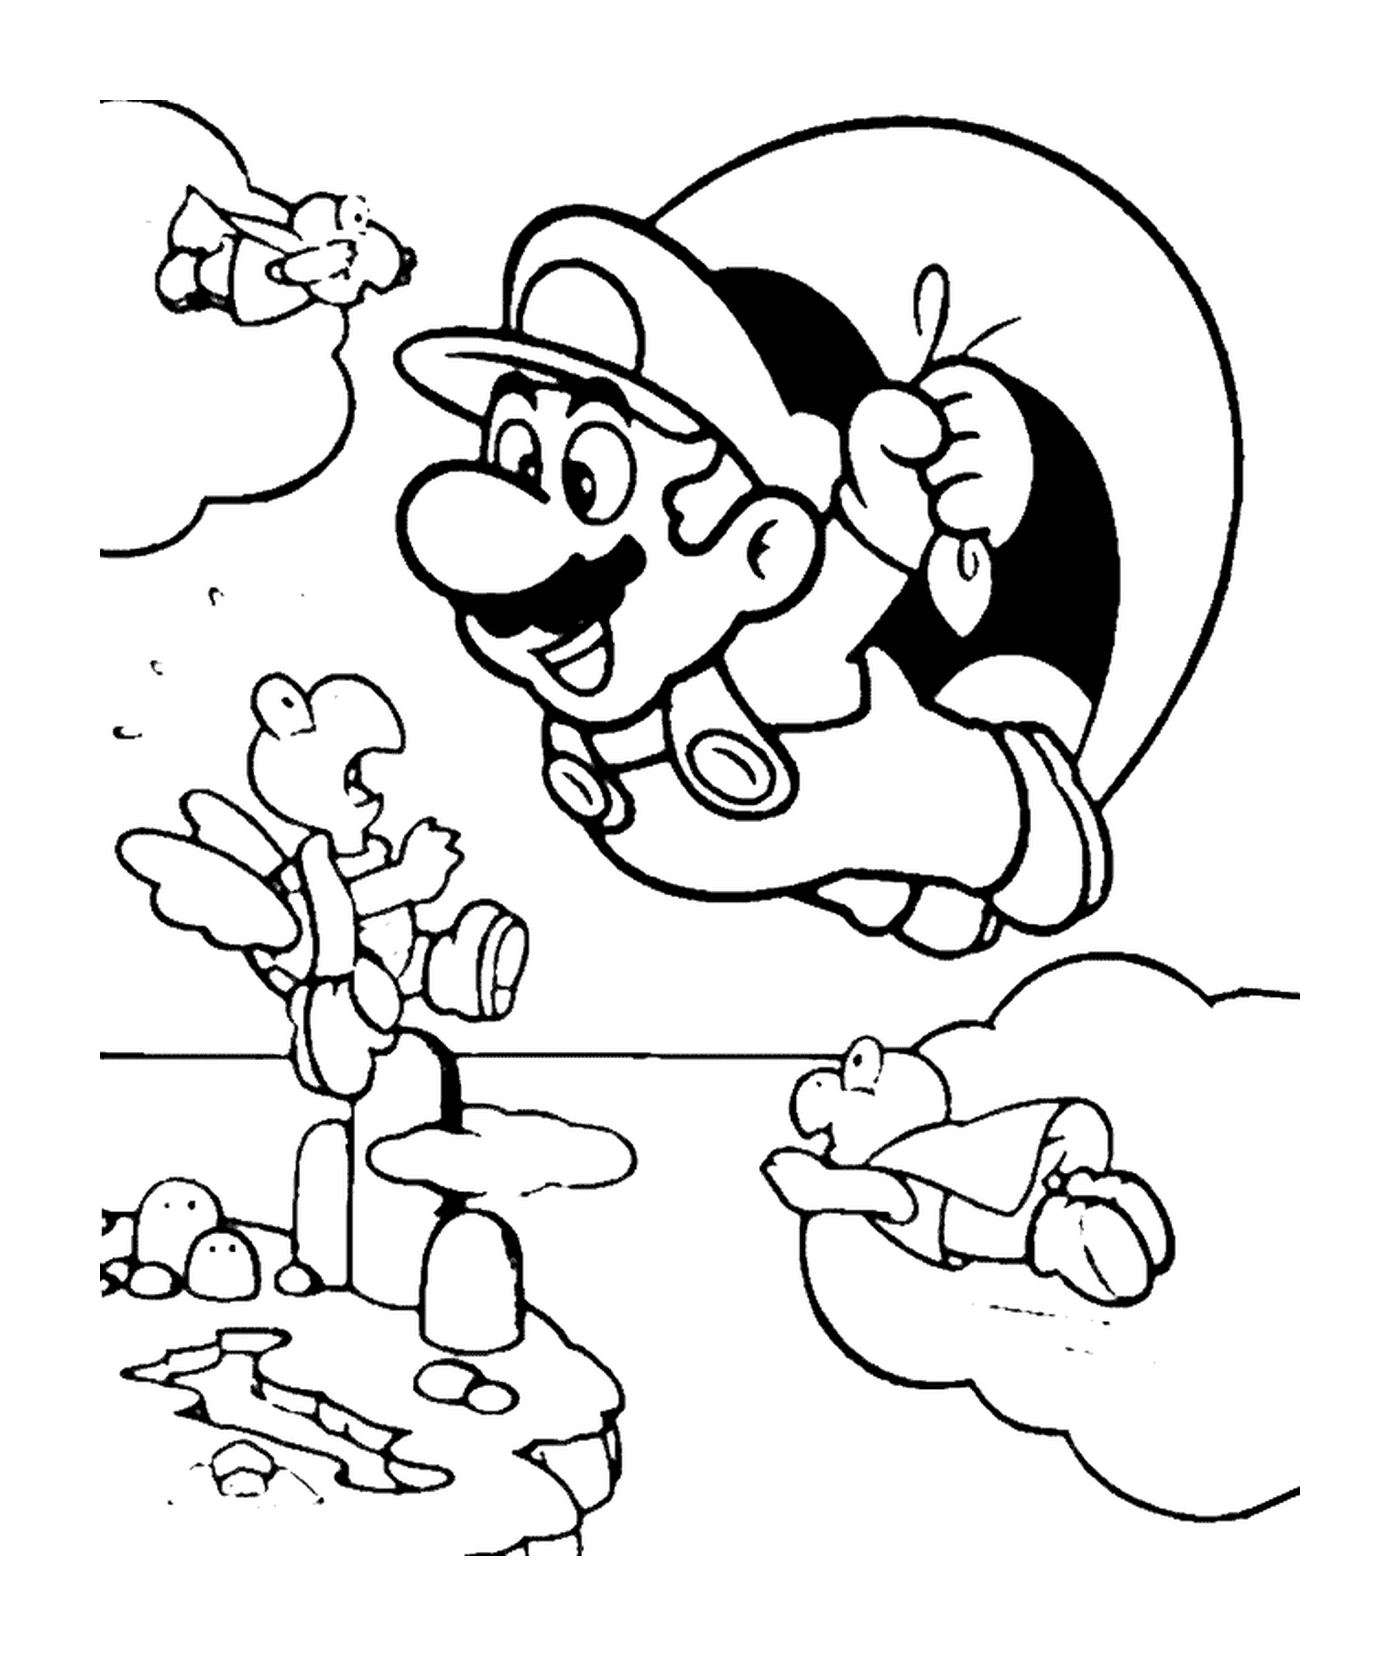  Mario vola con un paracadute 